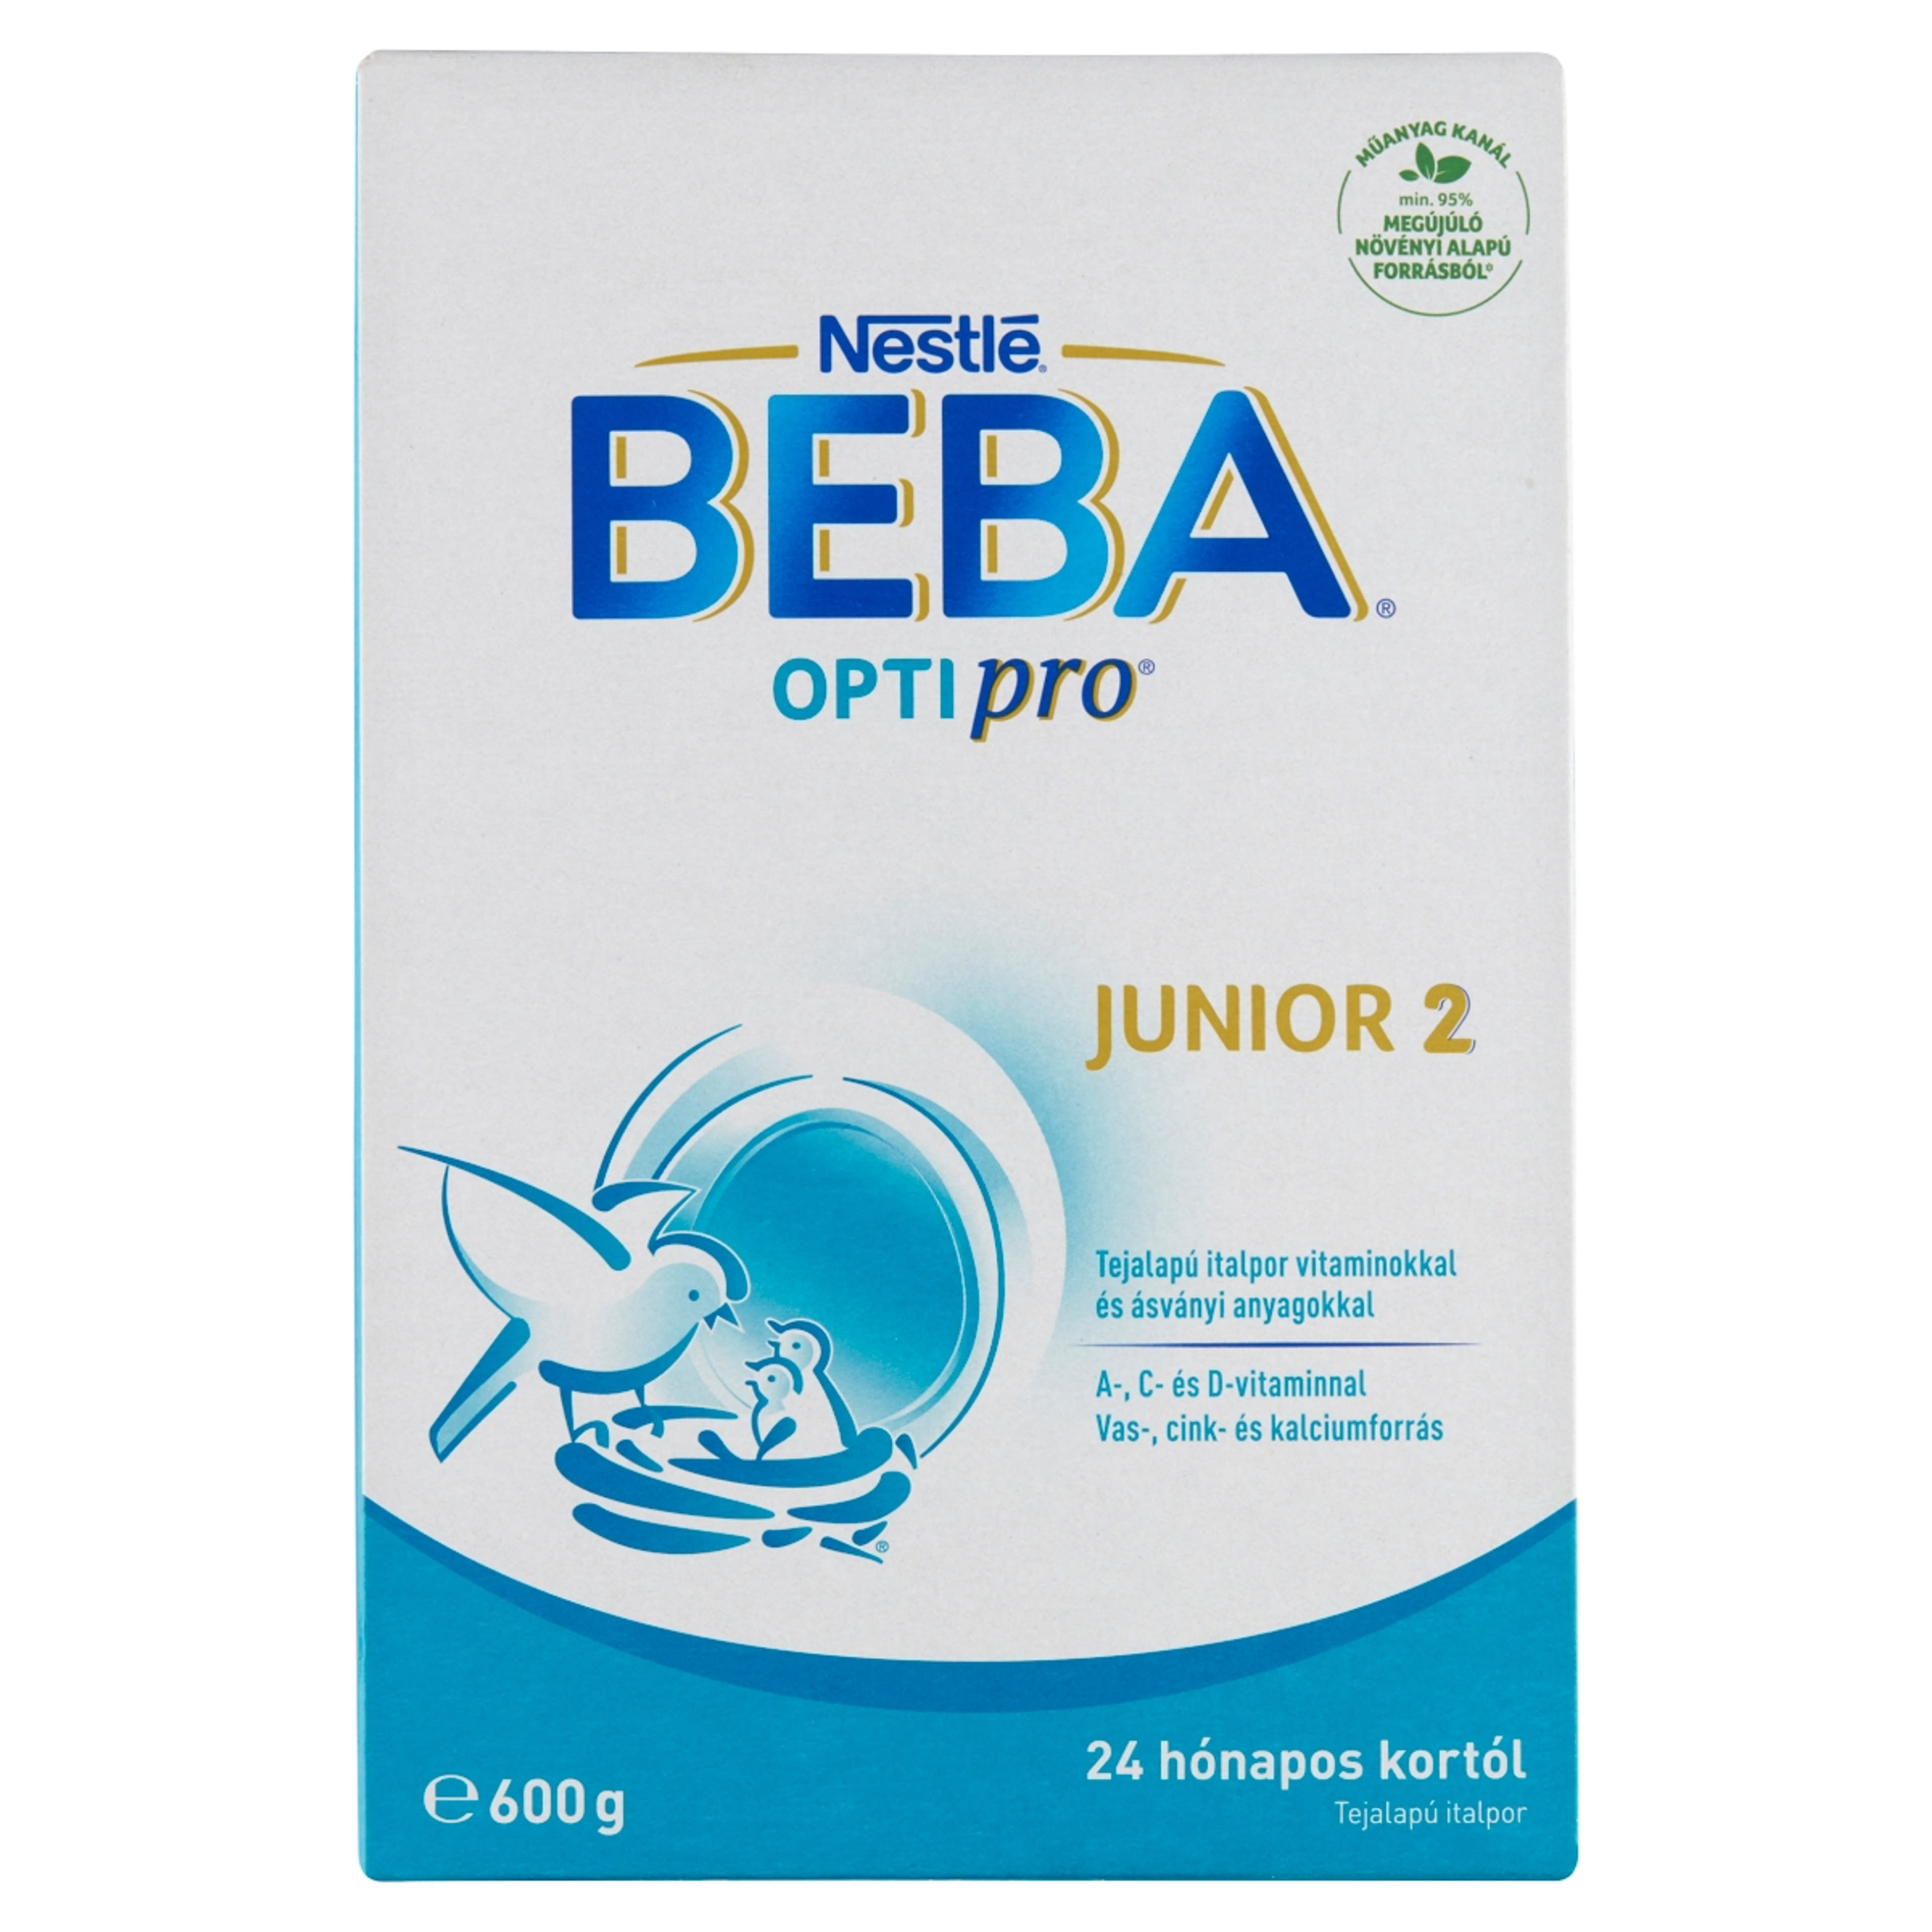 BEBA OPTIPRO Junior 2 italpor sovány tejjel 24 hónapos kortól - 600 g